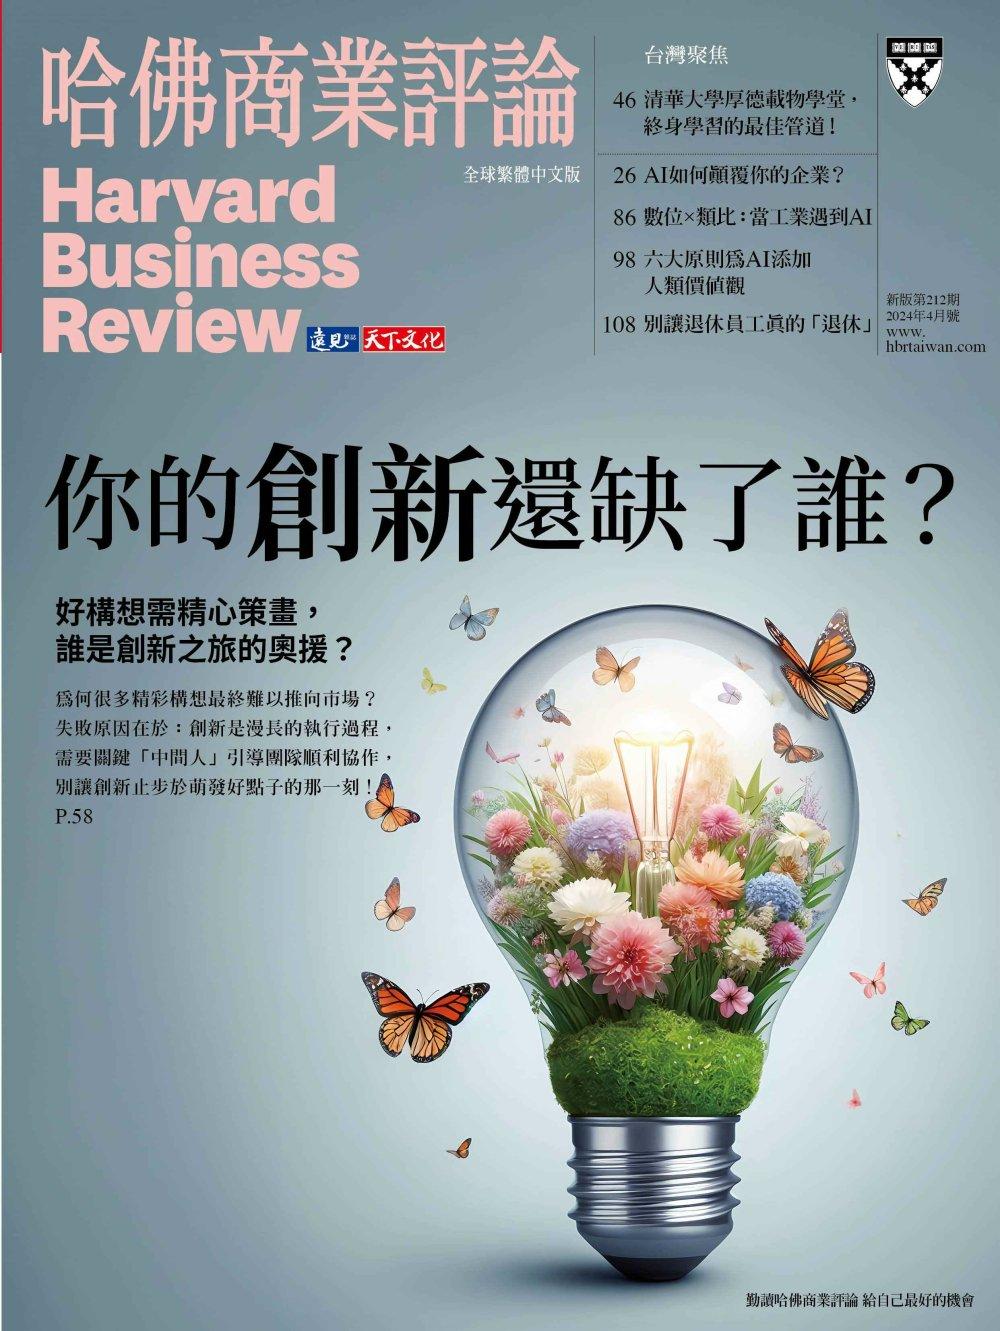 哈佛商業評論全球中文版 一年12期+免費請您喝5杯星巴克